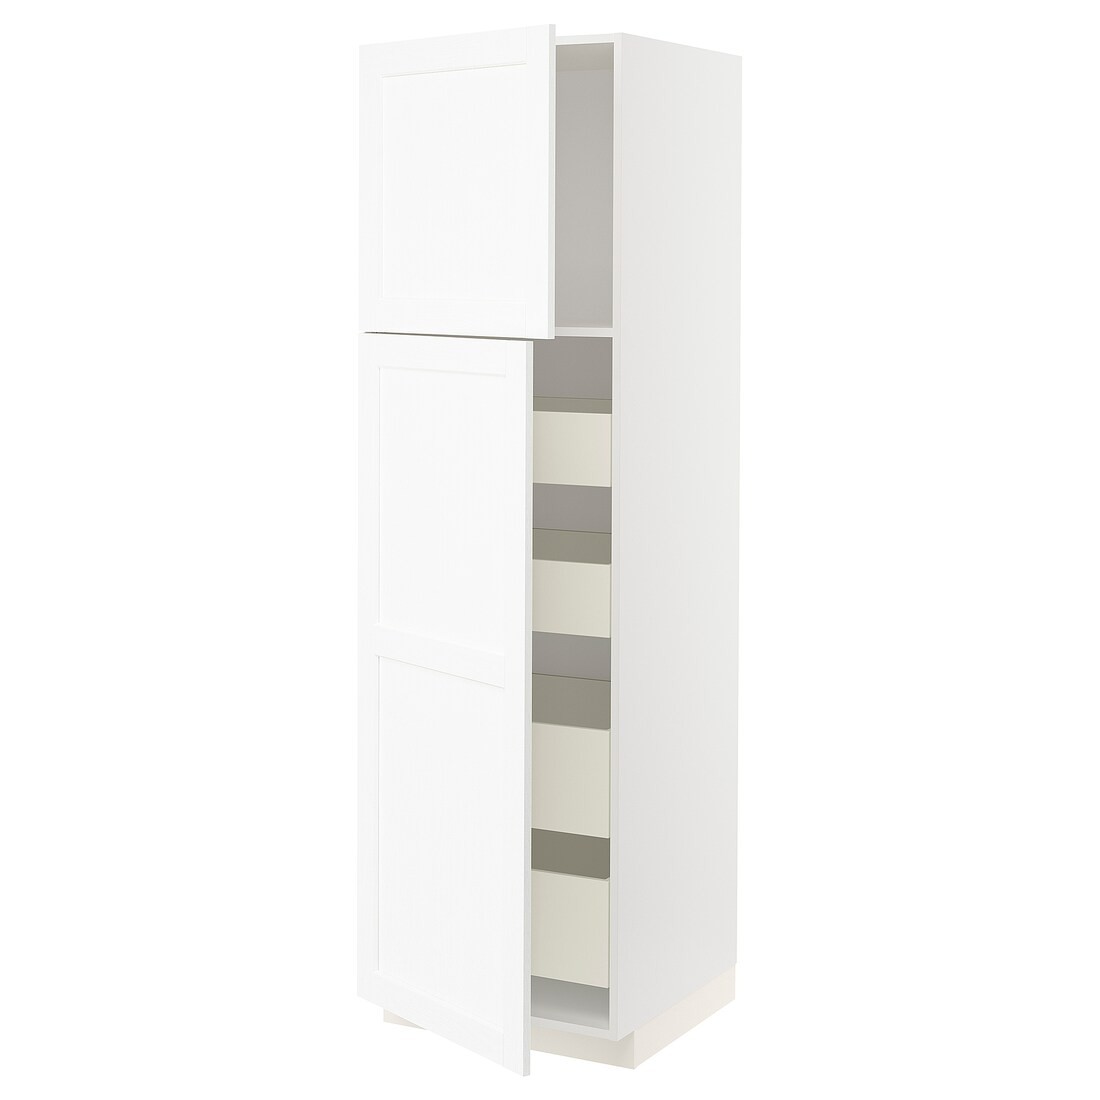 METOD МЕТОД / MAXIMERA МАКСИМЕРА Шкаф высокий 2 двери / 4 ящика, белый Enköping / белый имитация дерева, 60x60x200 см